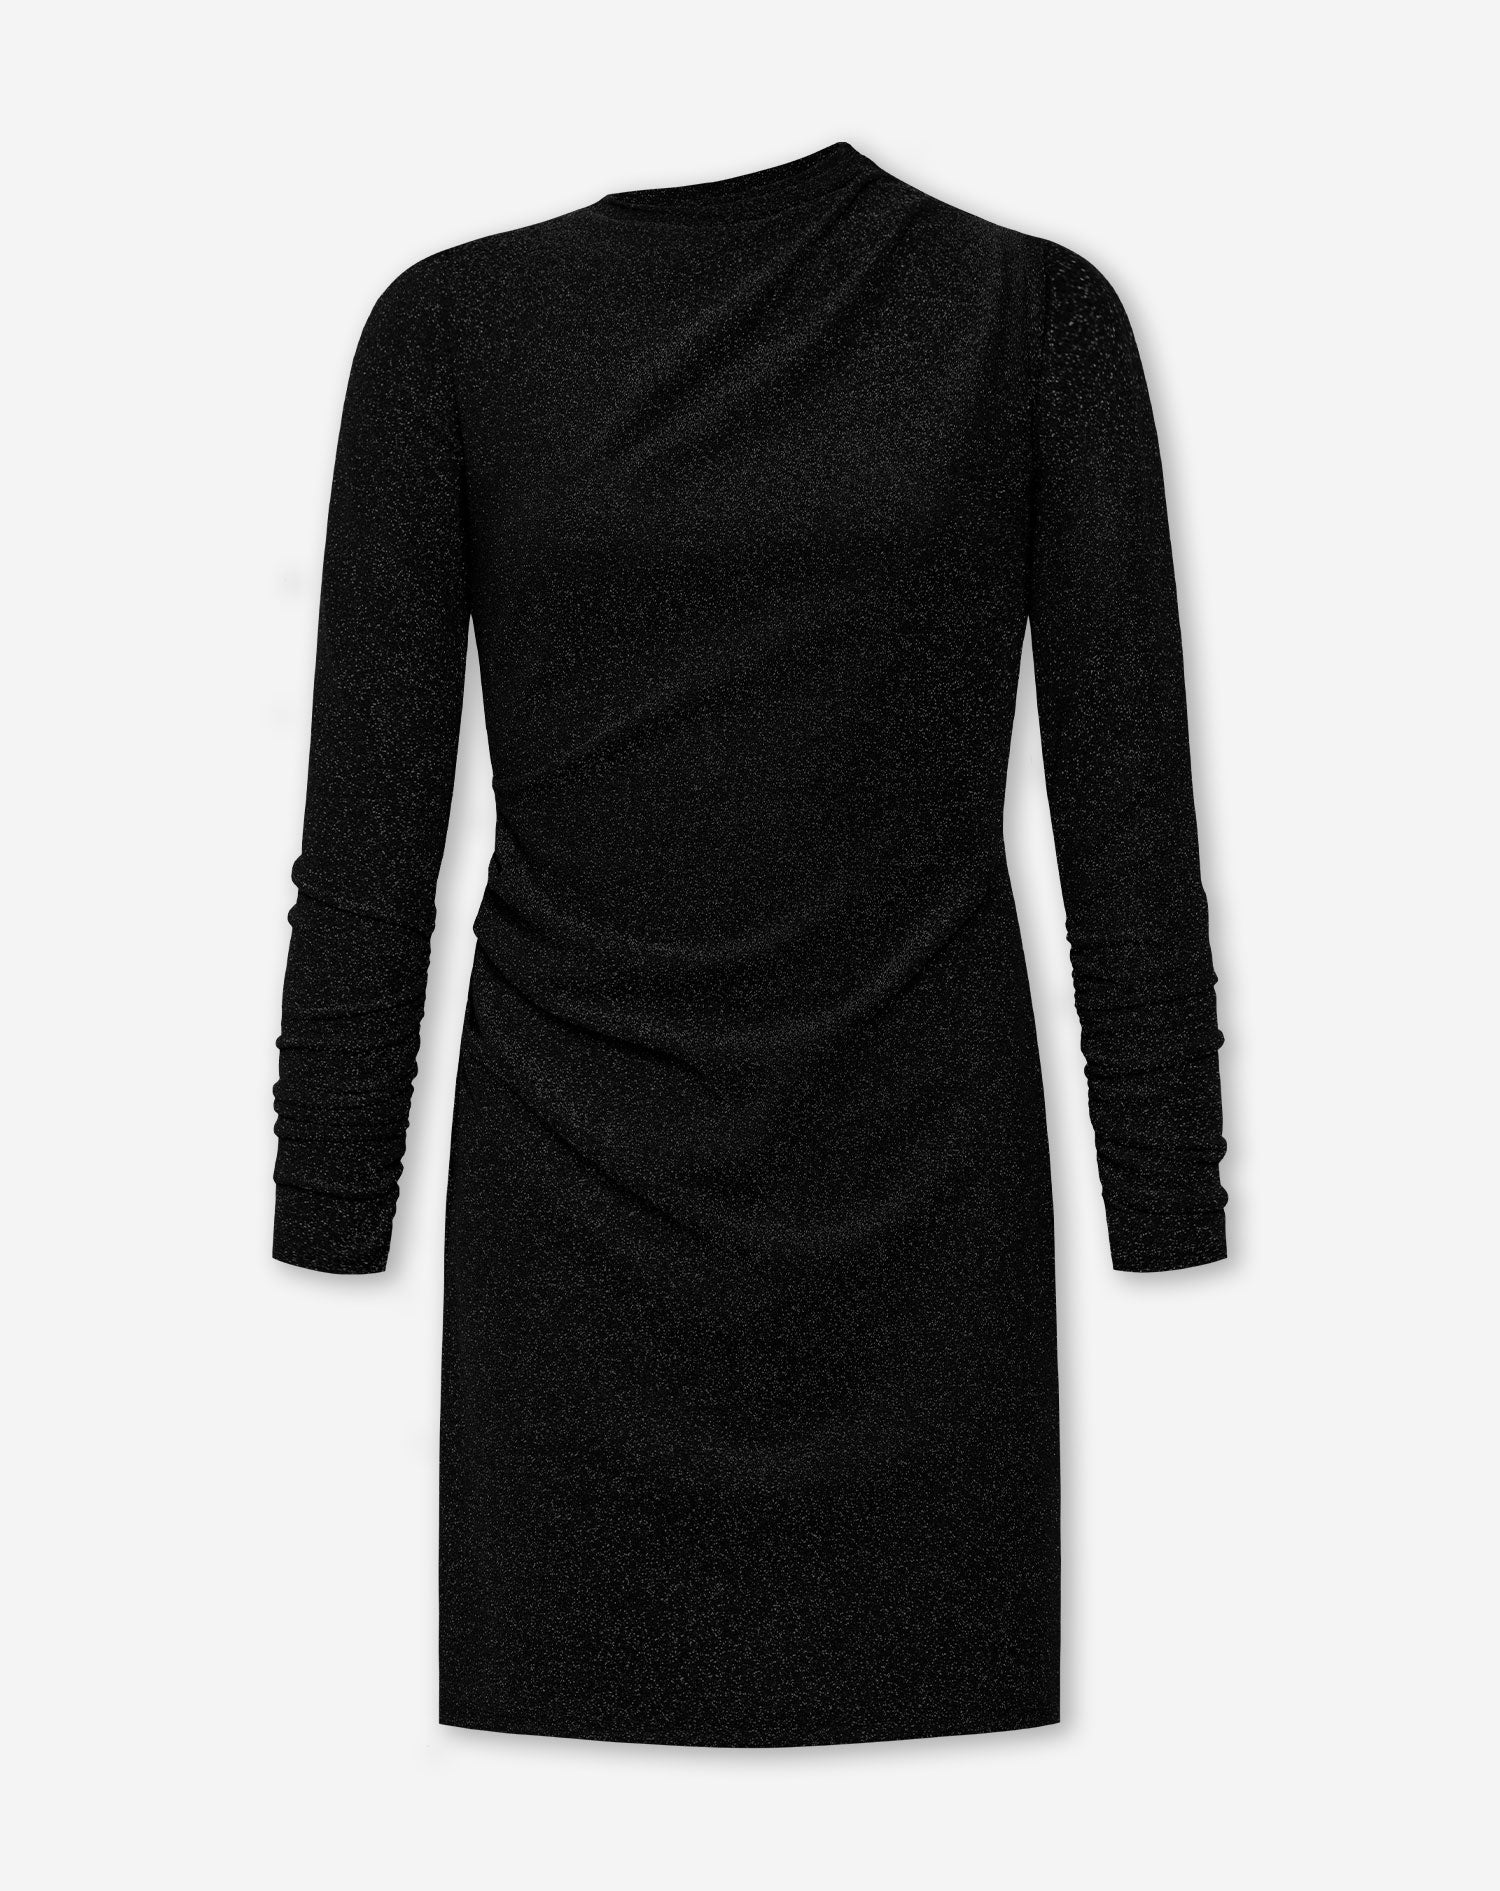 NINA LUREX DRESS BLACK